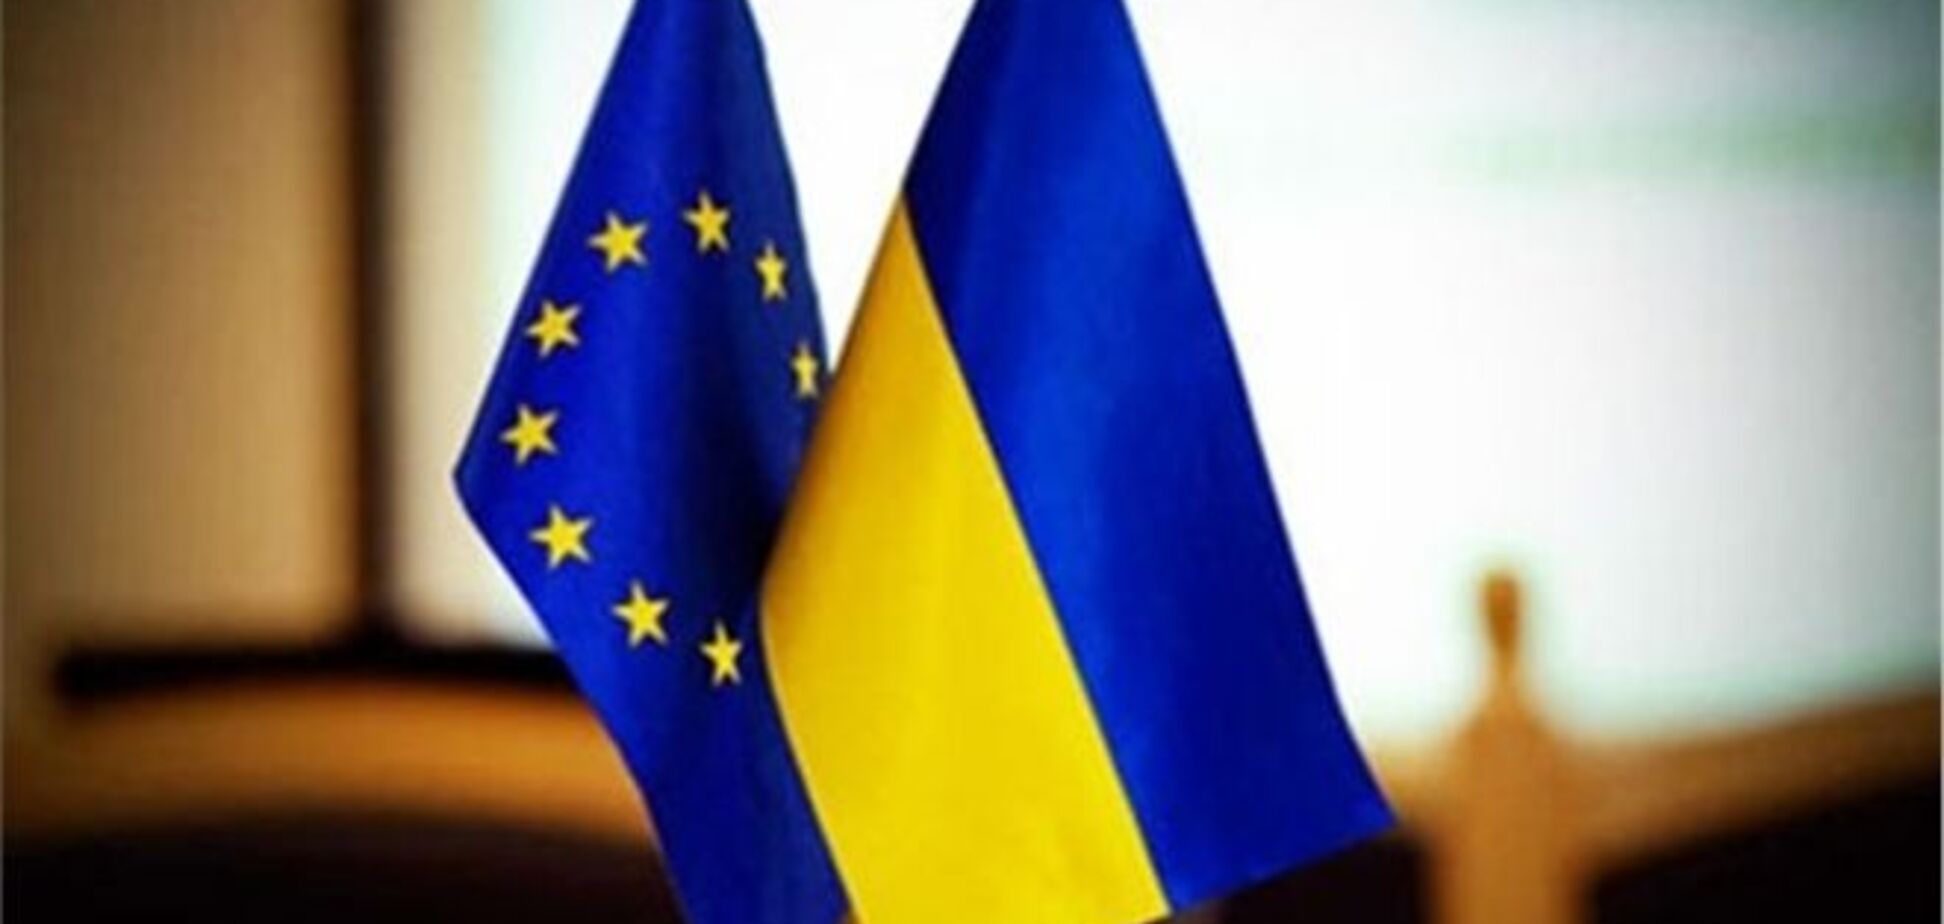 Мін'юст: проект угоди про асоціацію з ЄС відповідає Конституції України